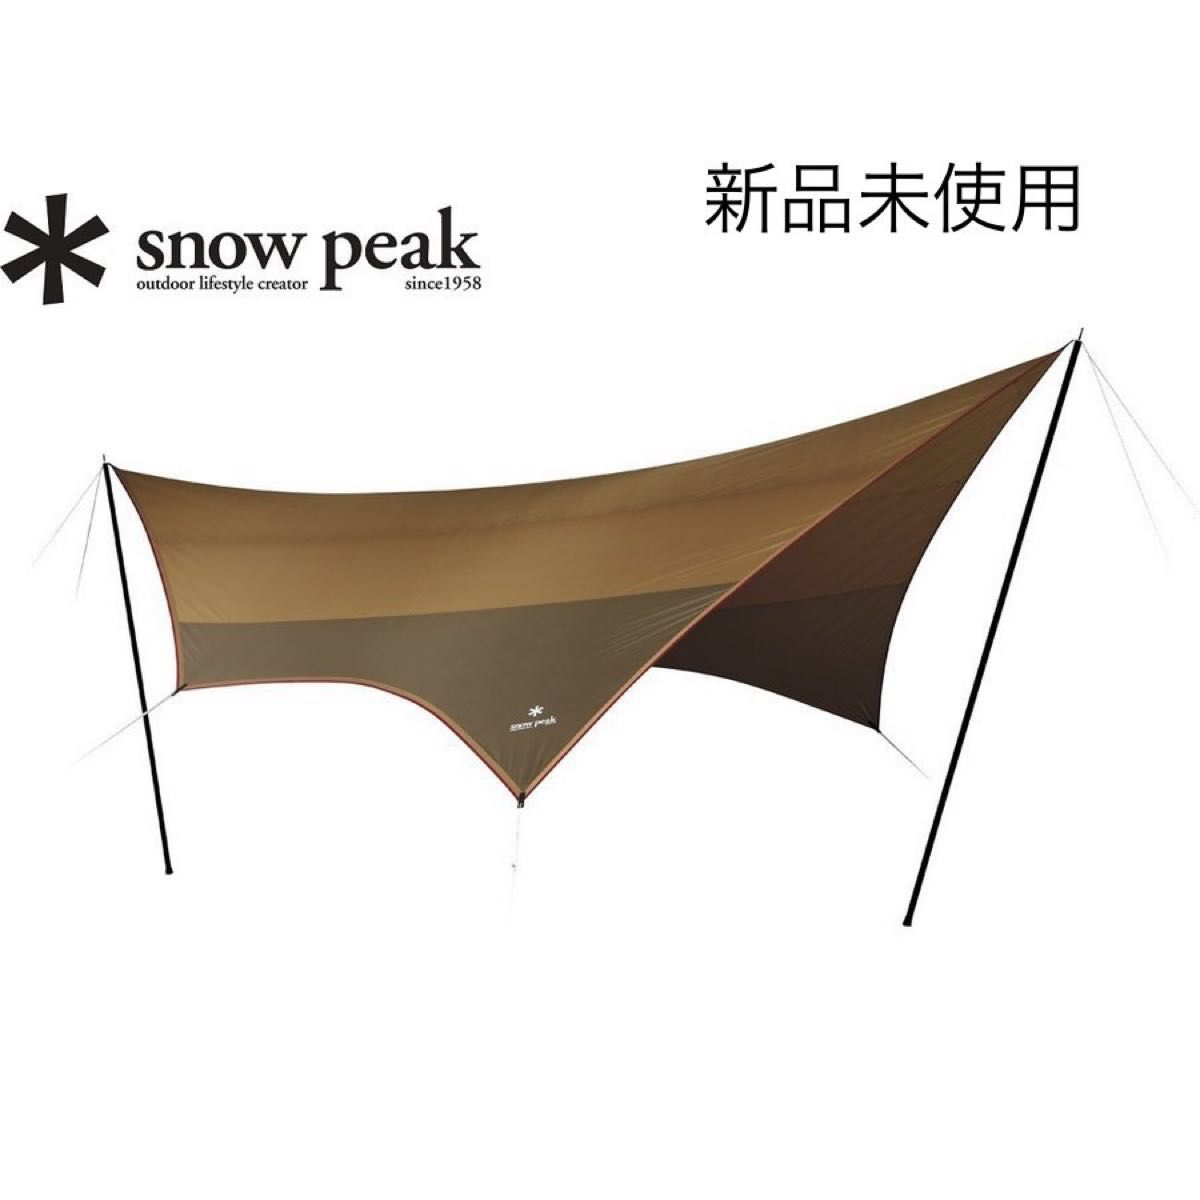 スノーピーク snow peak アメニティタープヘキサLセット 新品未使用